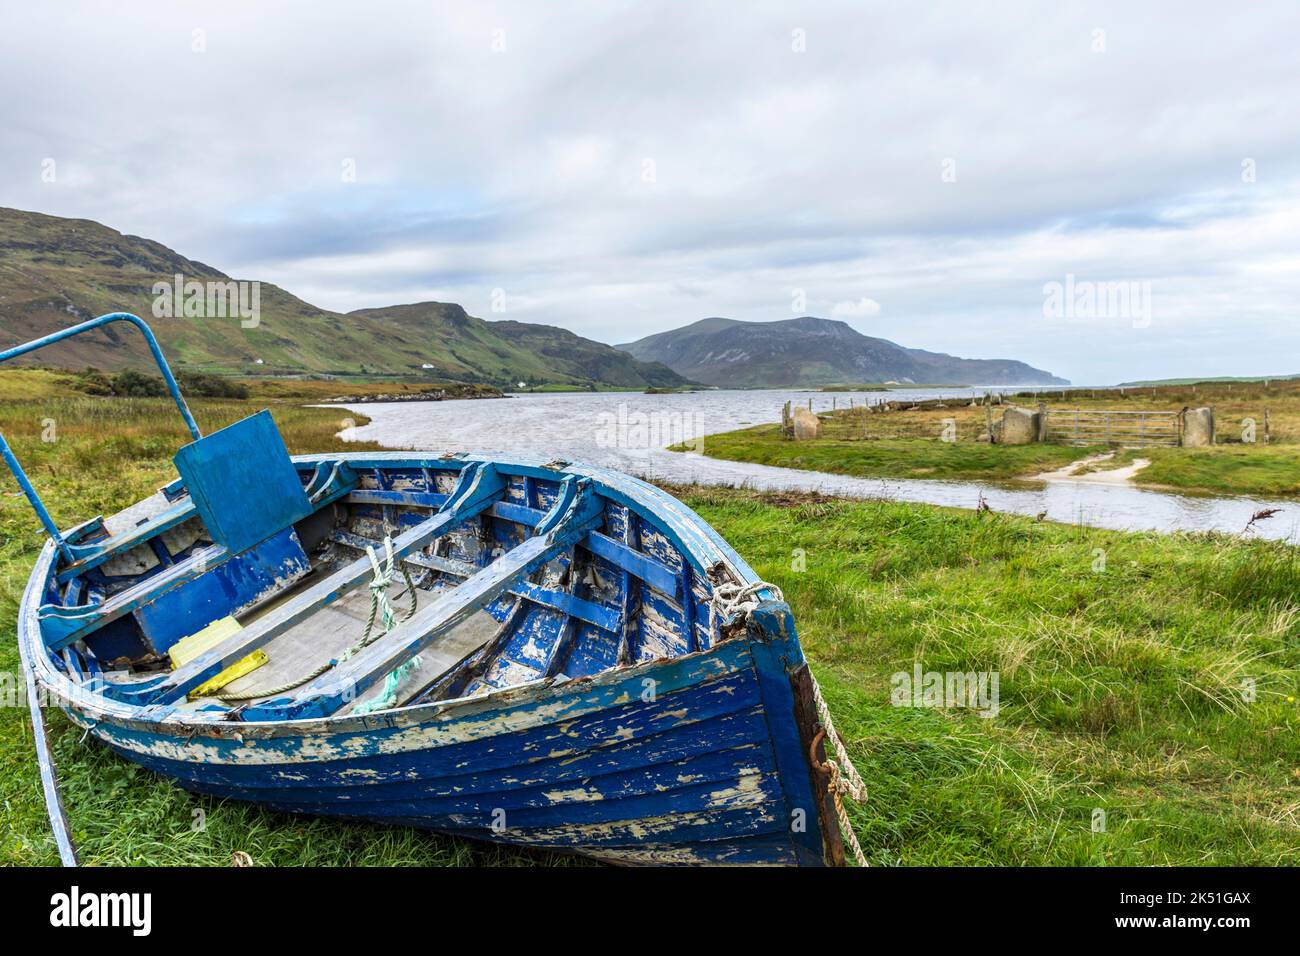 Old inshore shell fishing boat on Wild Atlantic Way coast near Ardara, County Donegal, Ireland Stock Photo